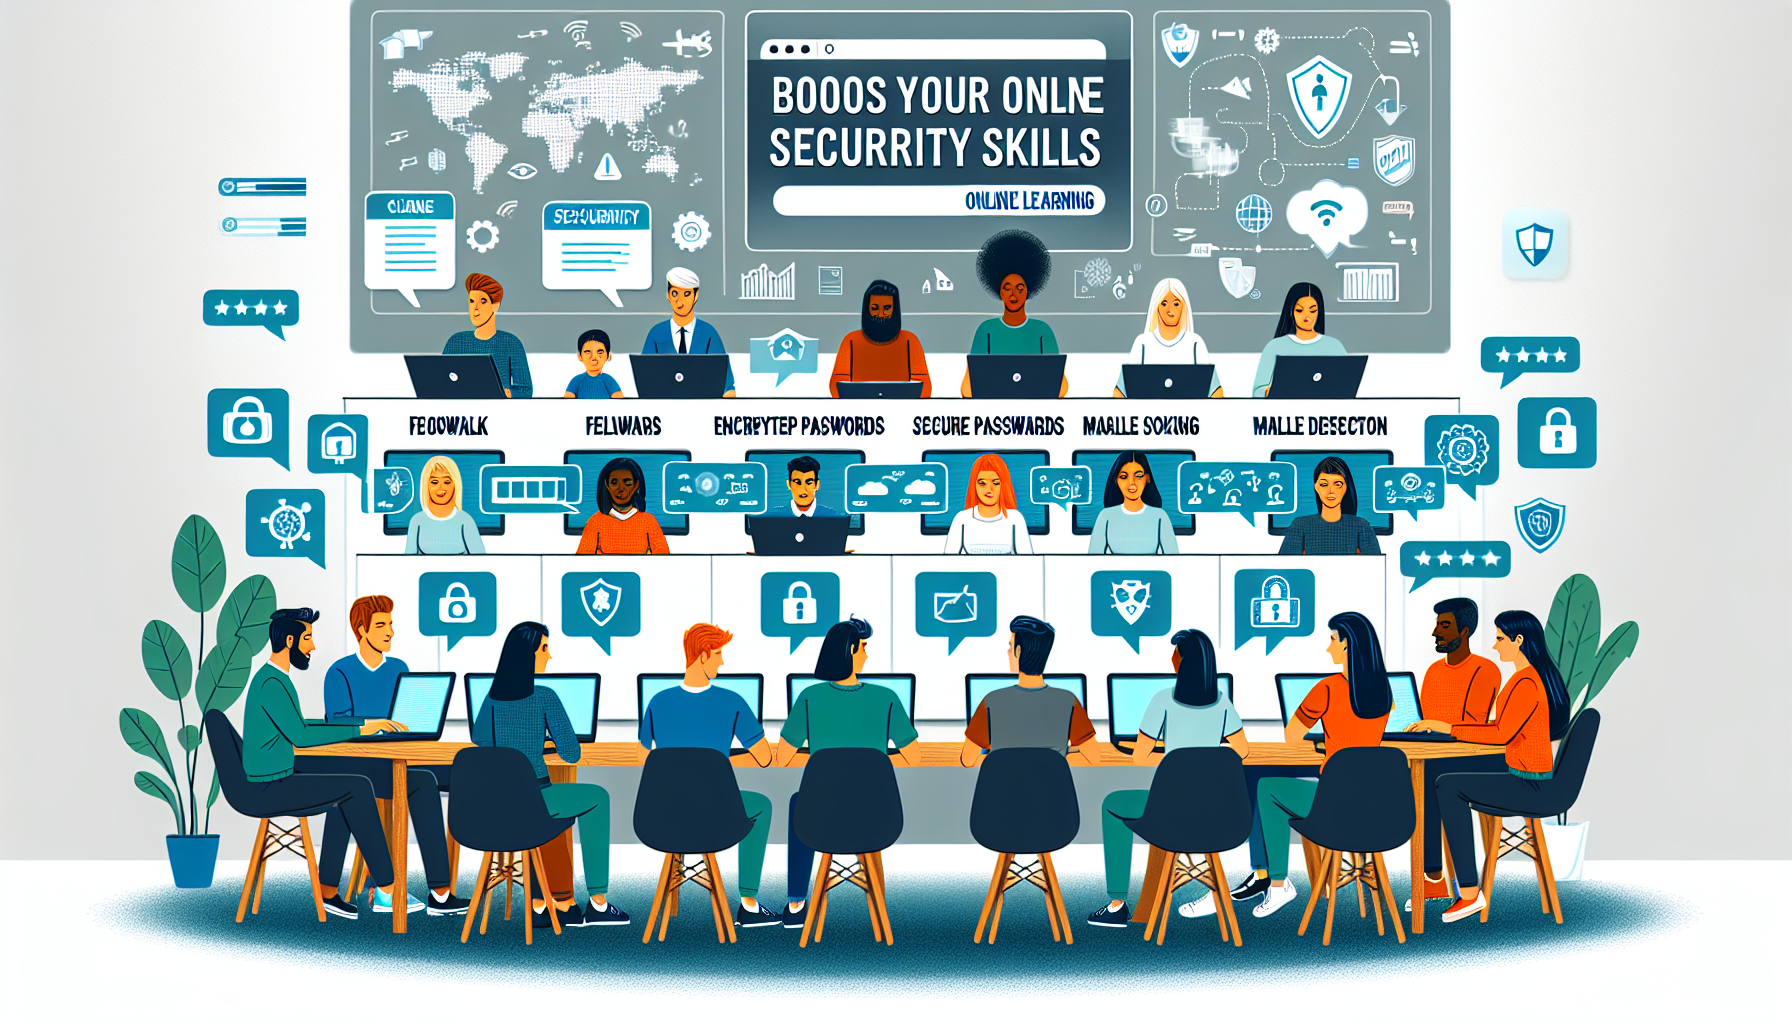 découvrez notre formation en ligne en cybersécurité pour acquérir les compétences essentielles et devenir un expert en sécurité informatique.